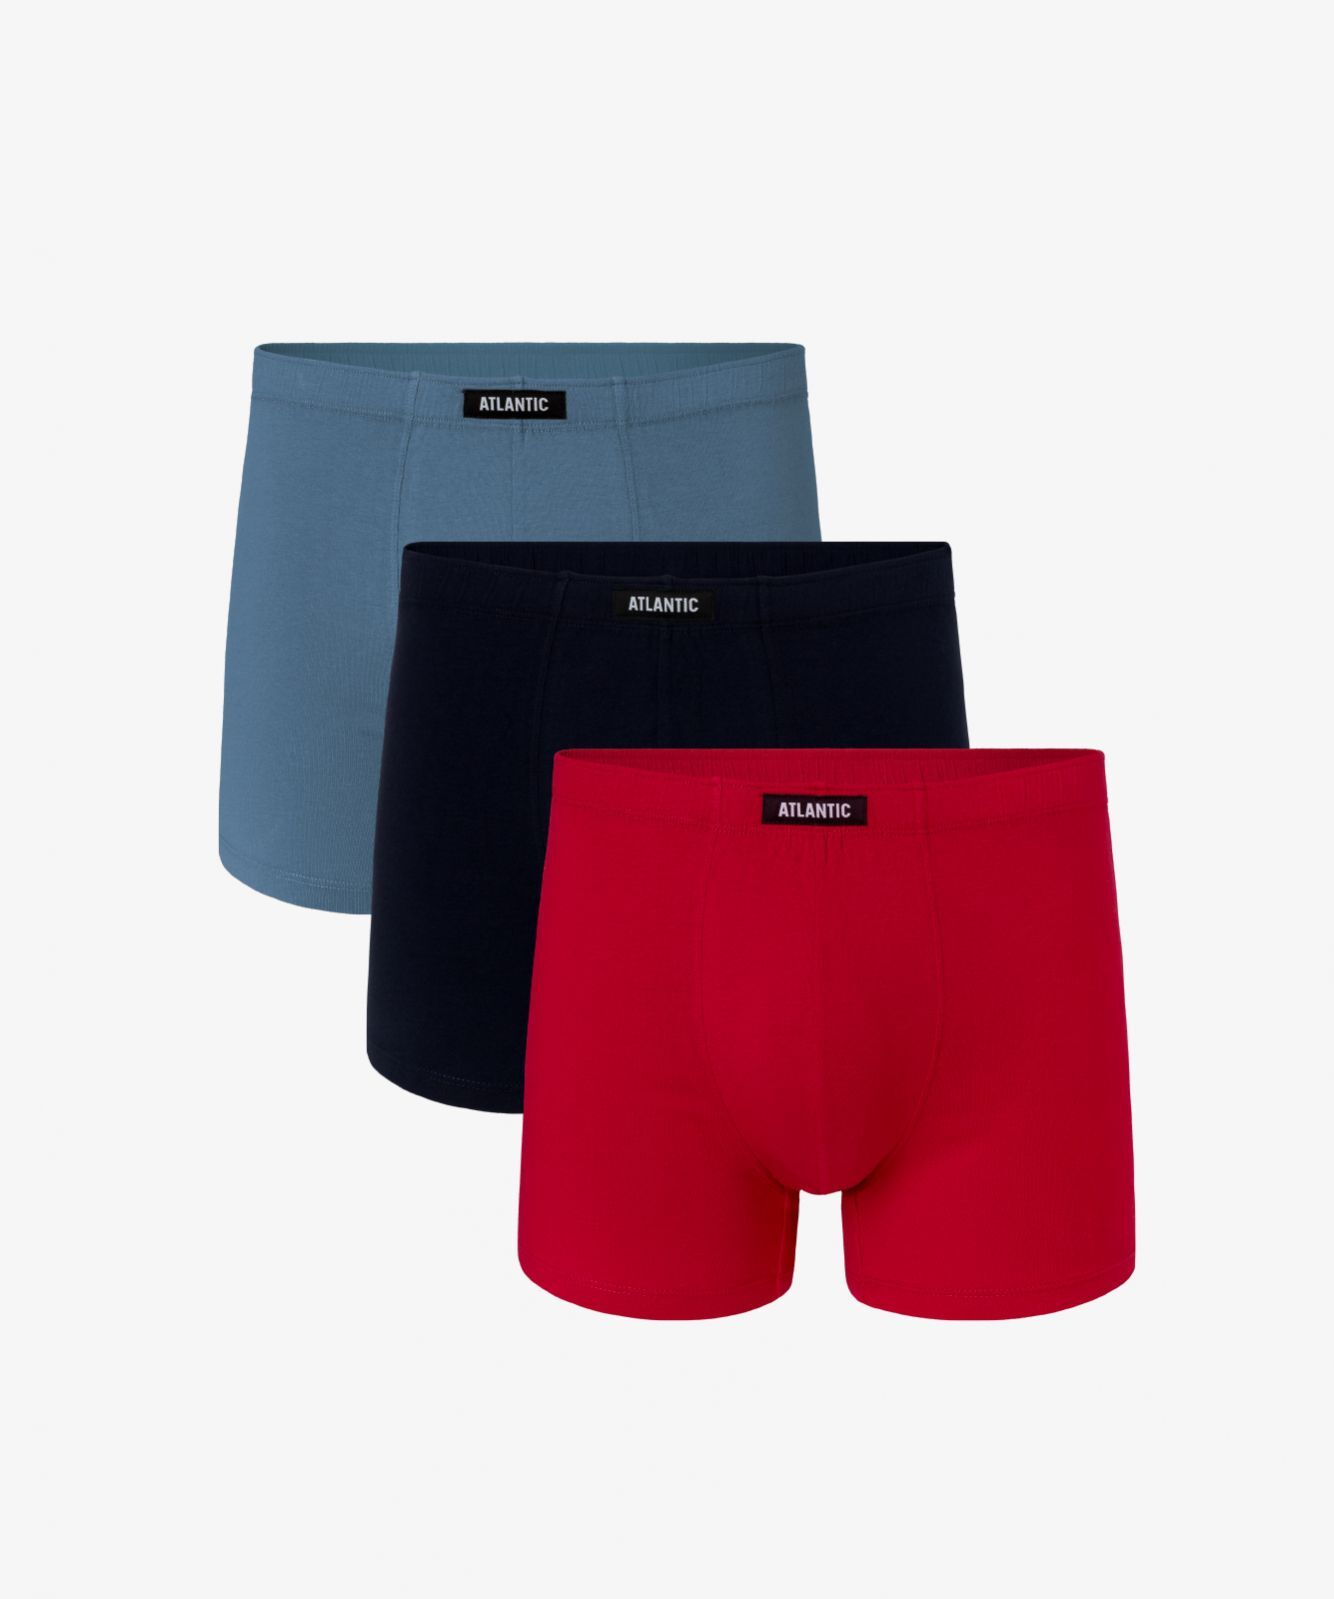 Мужские трусы шорты Atlantic, набор из 3 шт., хлопок, деним + темно-синие + красные, 3MH-048